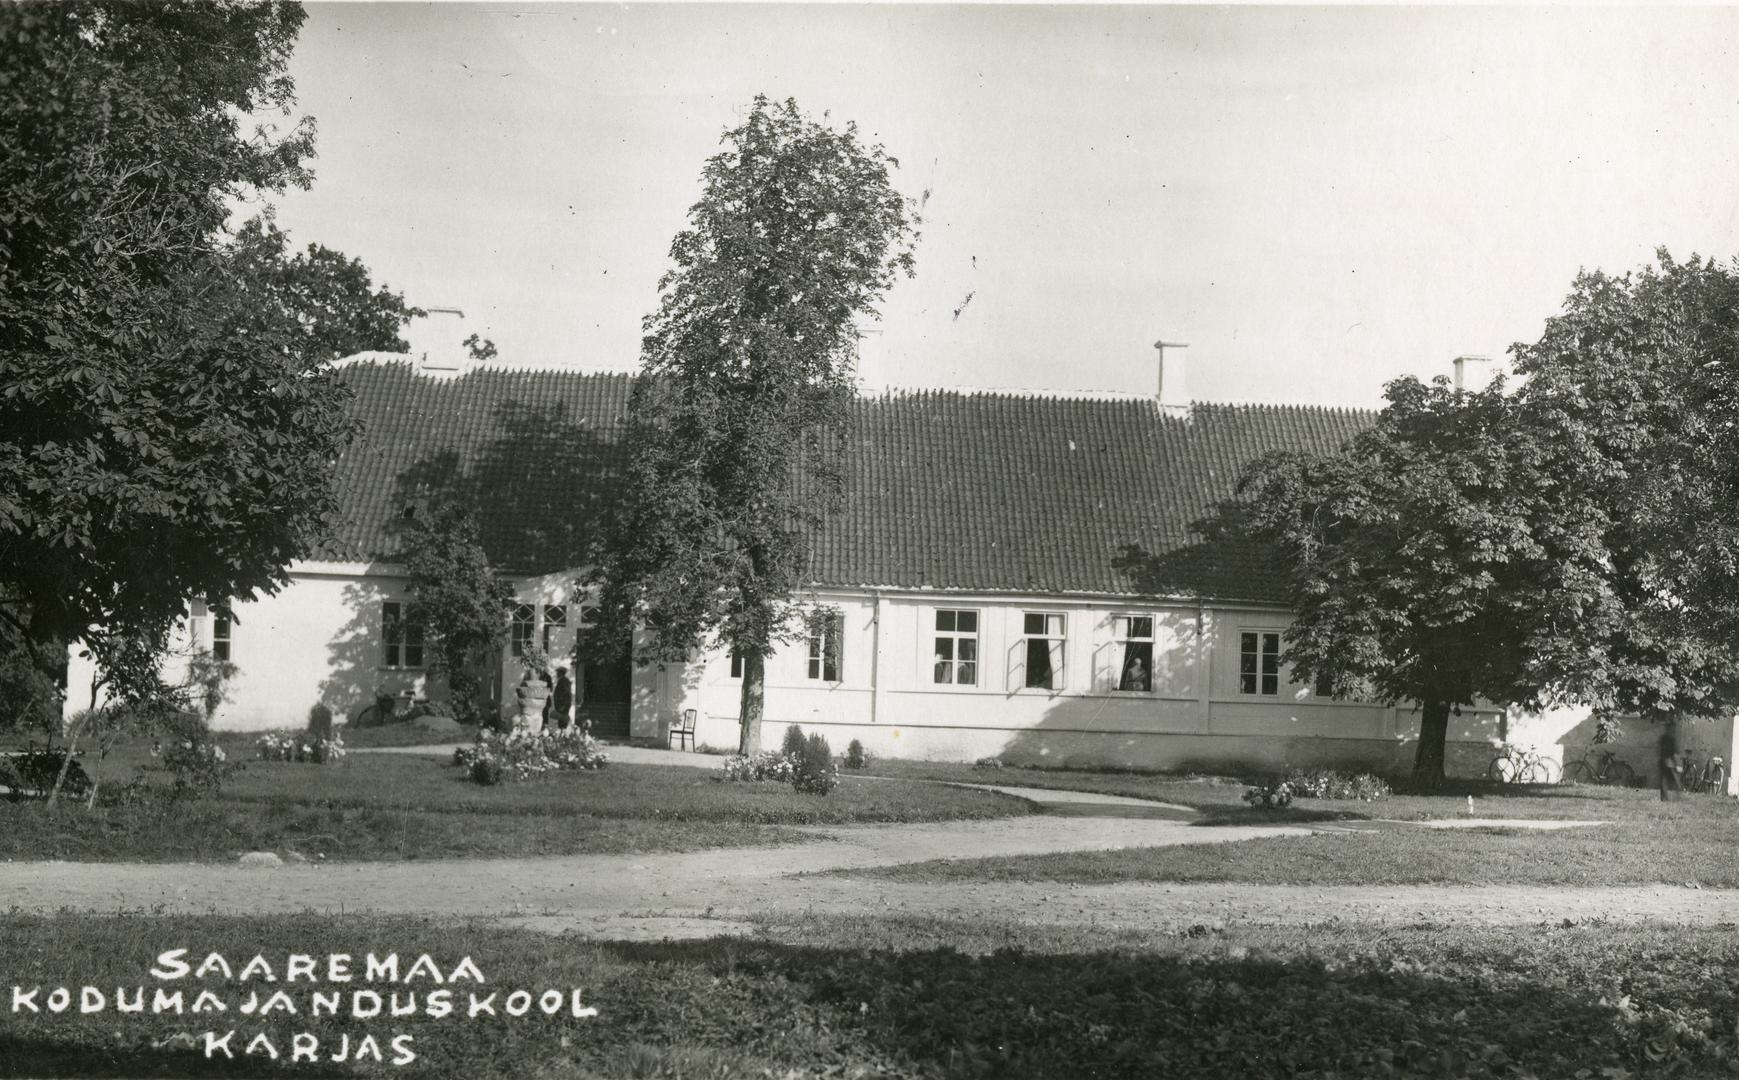 House School of Economics building in Saaremaa